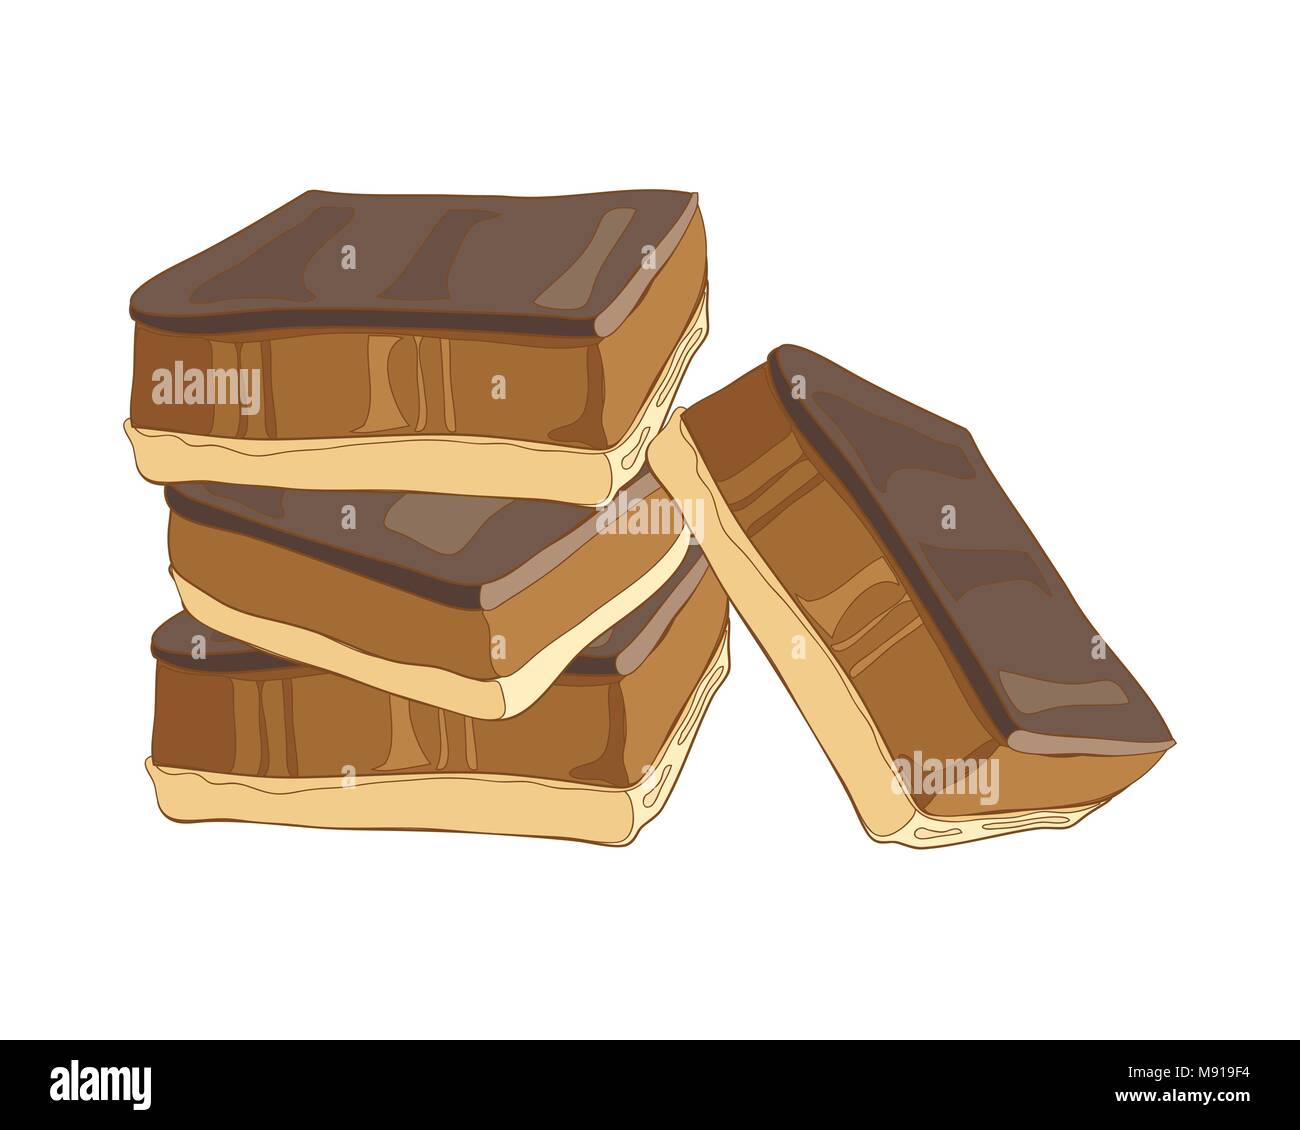 Un vecteur illustration au format eps d'un empilement de sablés au caramel avec une garniture au chocolat autrement connu comme millionaire shortbread Illustration de Vecteur